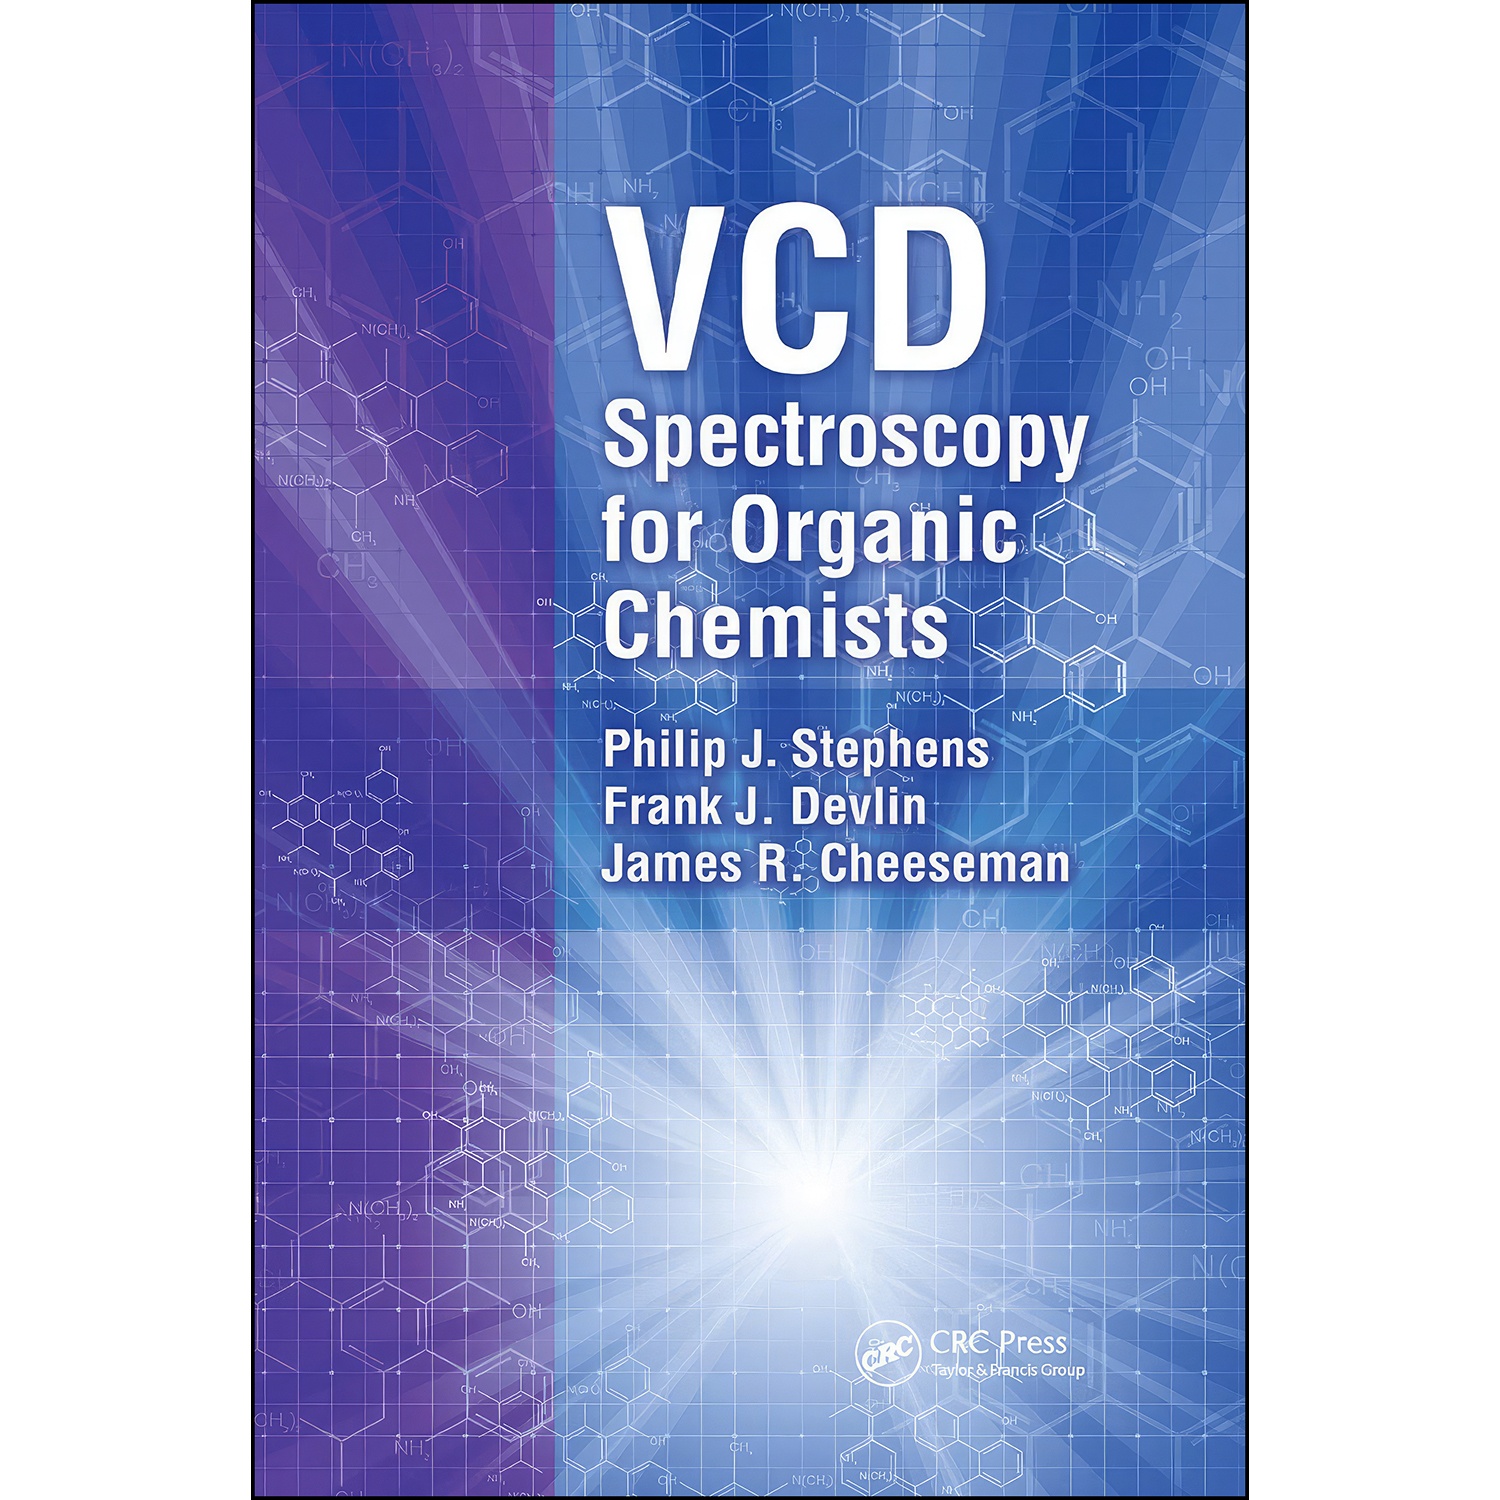 کتاب VCD Spectroscopy for Organic Chemists اثر جمعي از نويسندگان انتشارات تازه ها